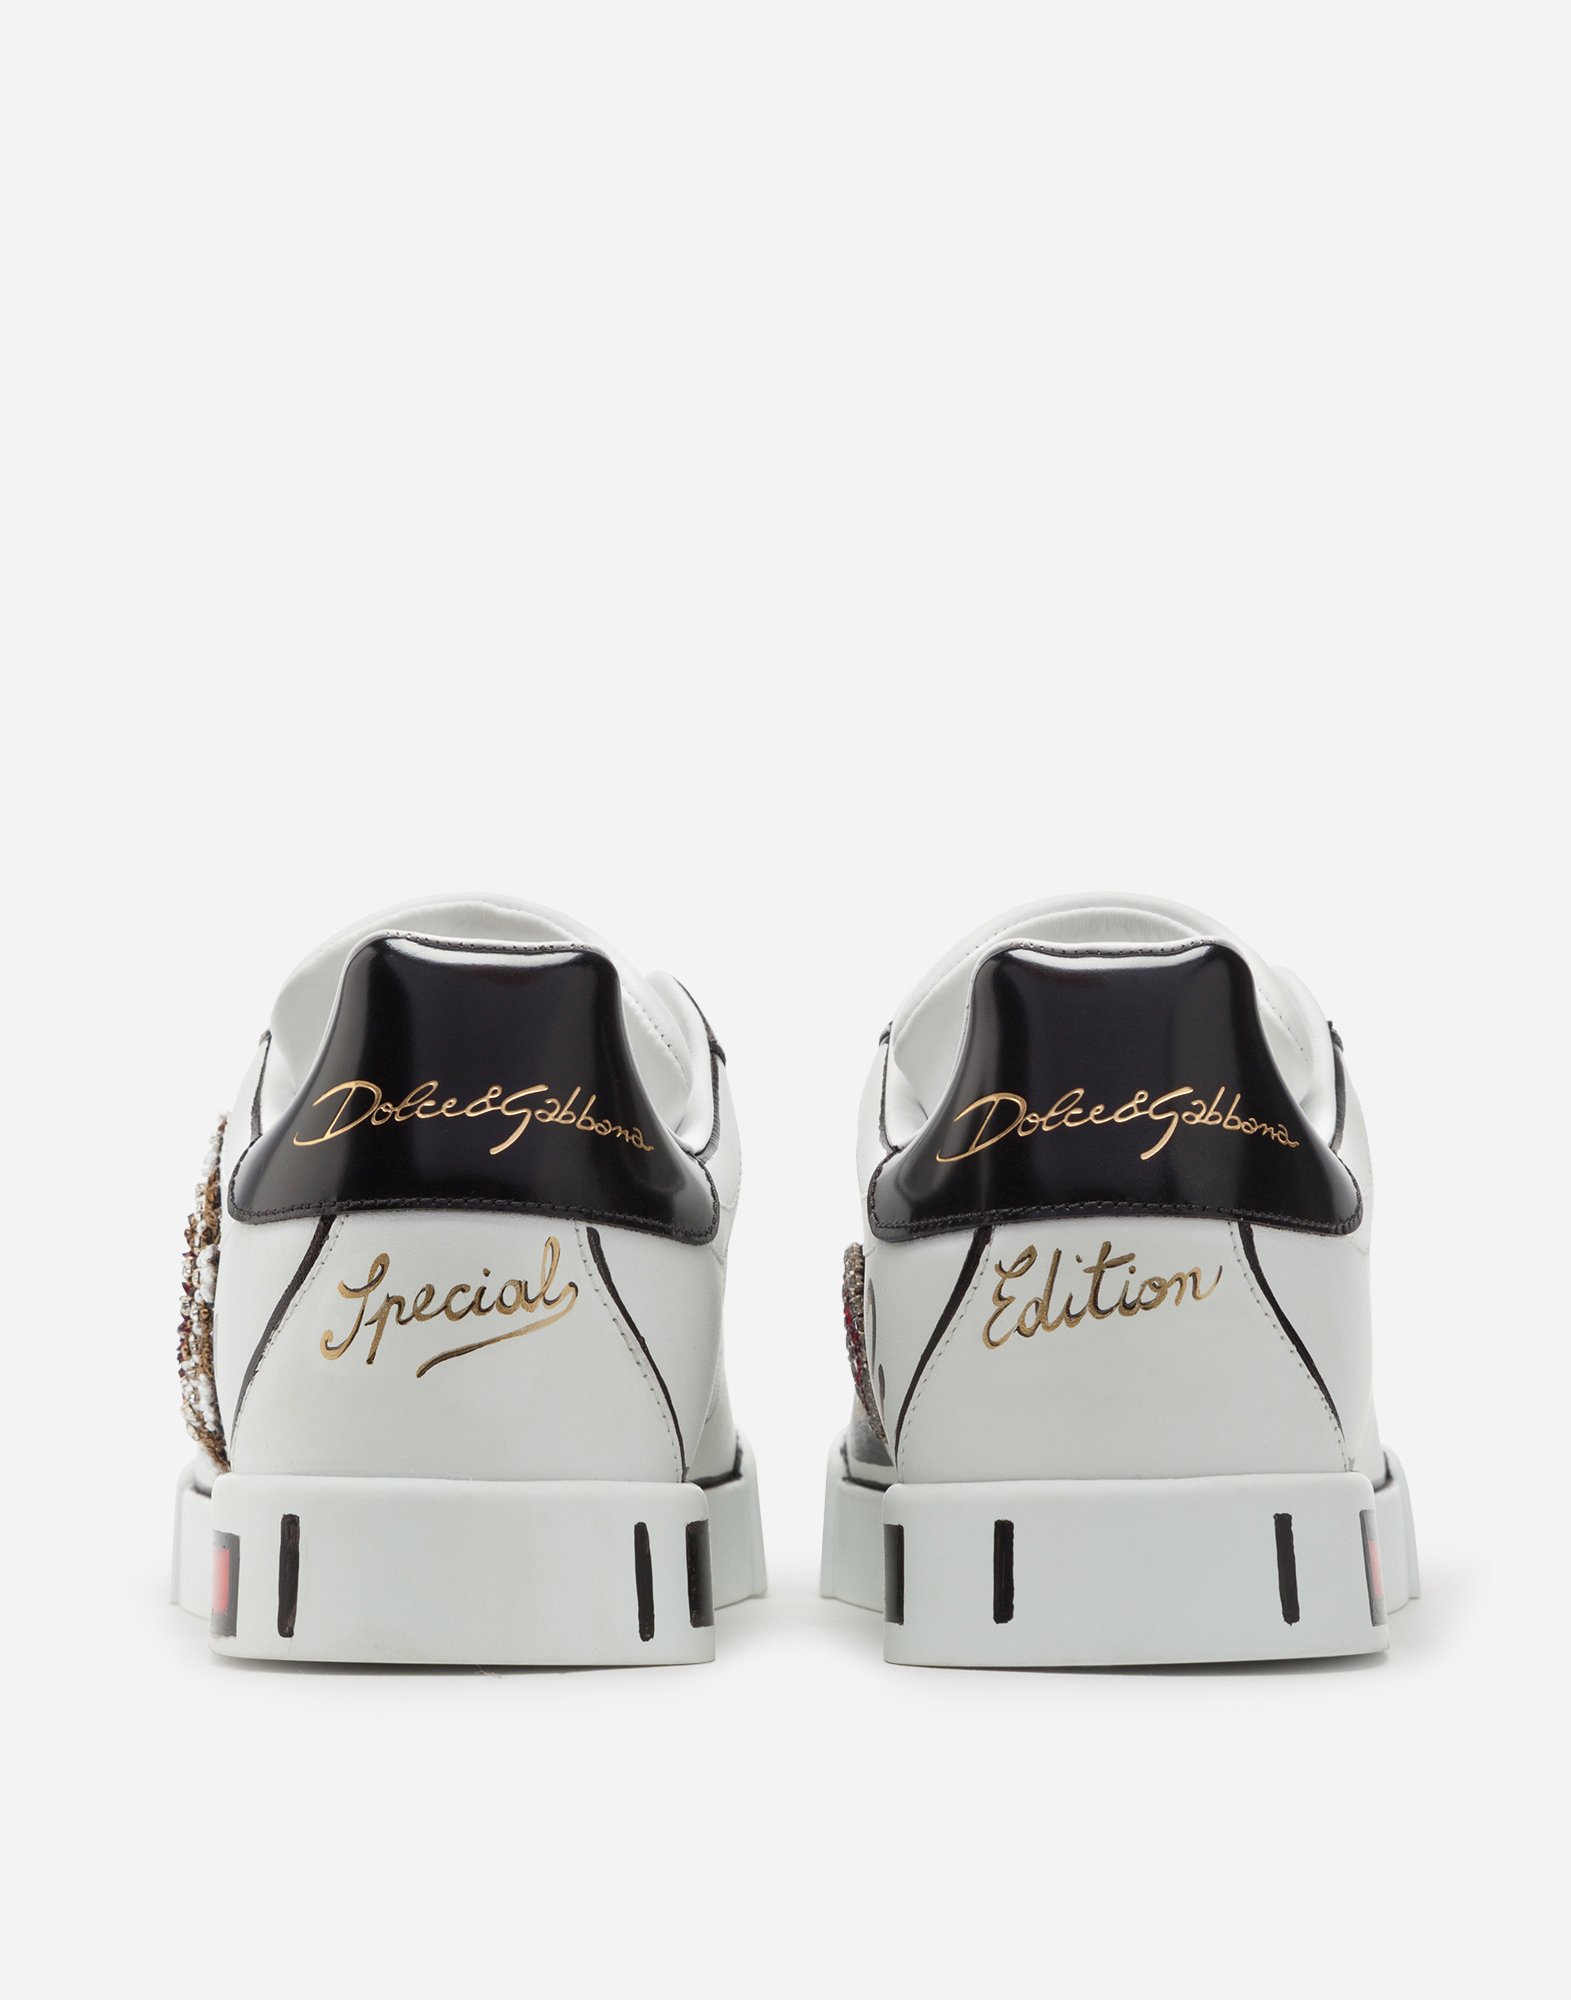 Limited edition Portofino sneakers